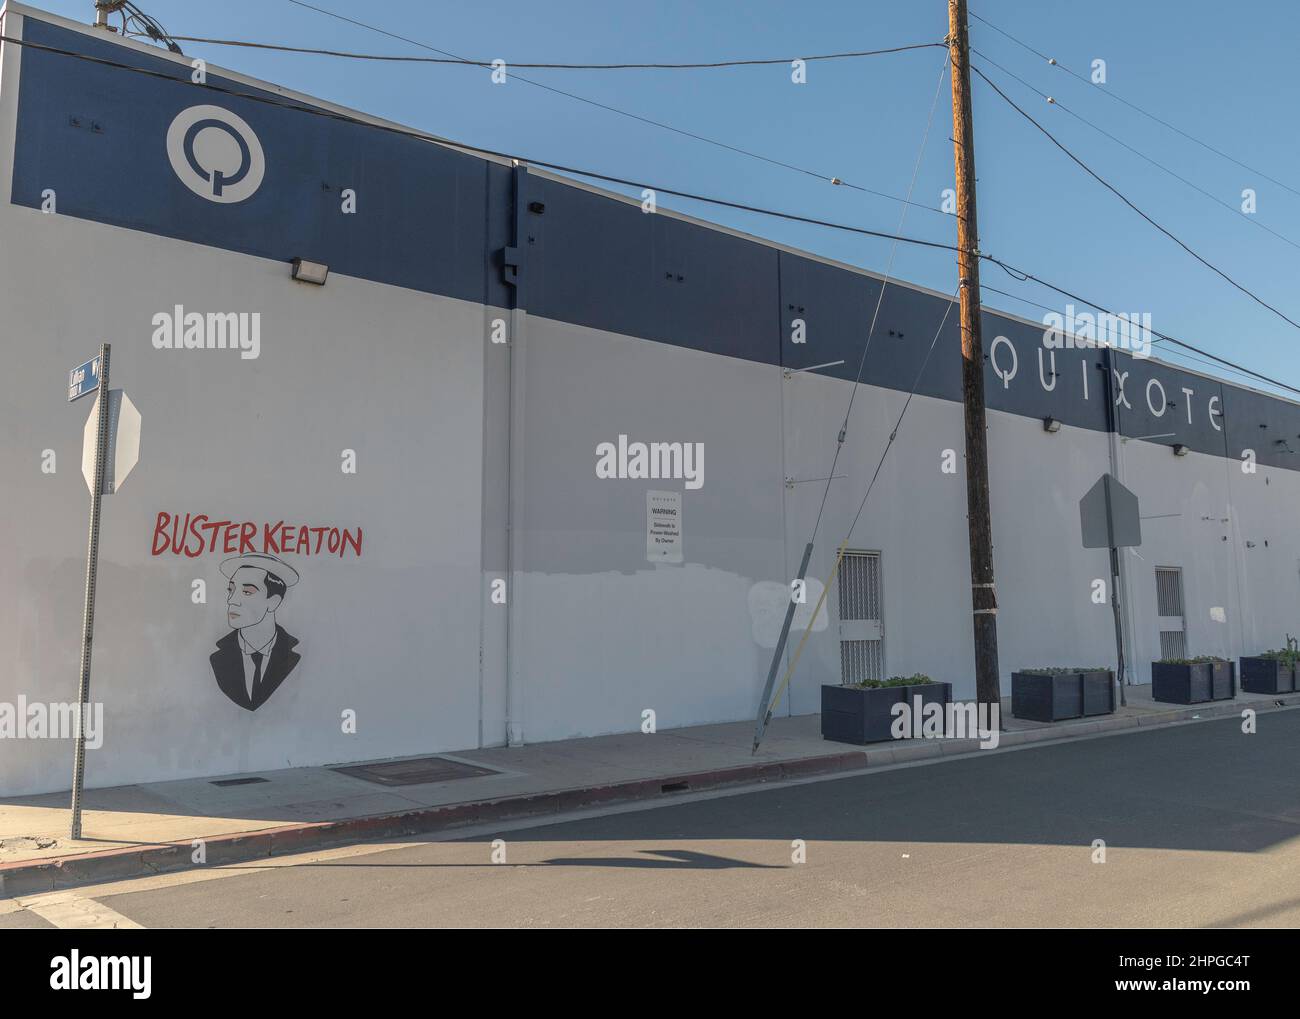 Los Angeles, CA, États-Unis - 18 février 2022 : extérieur de la production cinématographique Quichotte avec une fresque commémorative de Buster Keaton. Banque D'Images